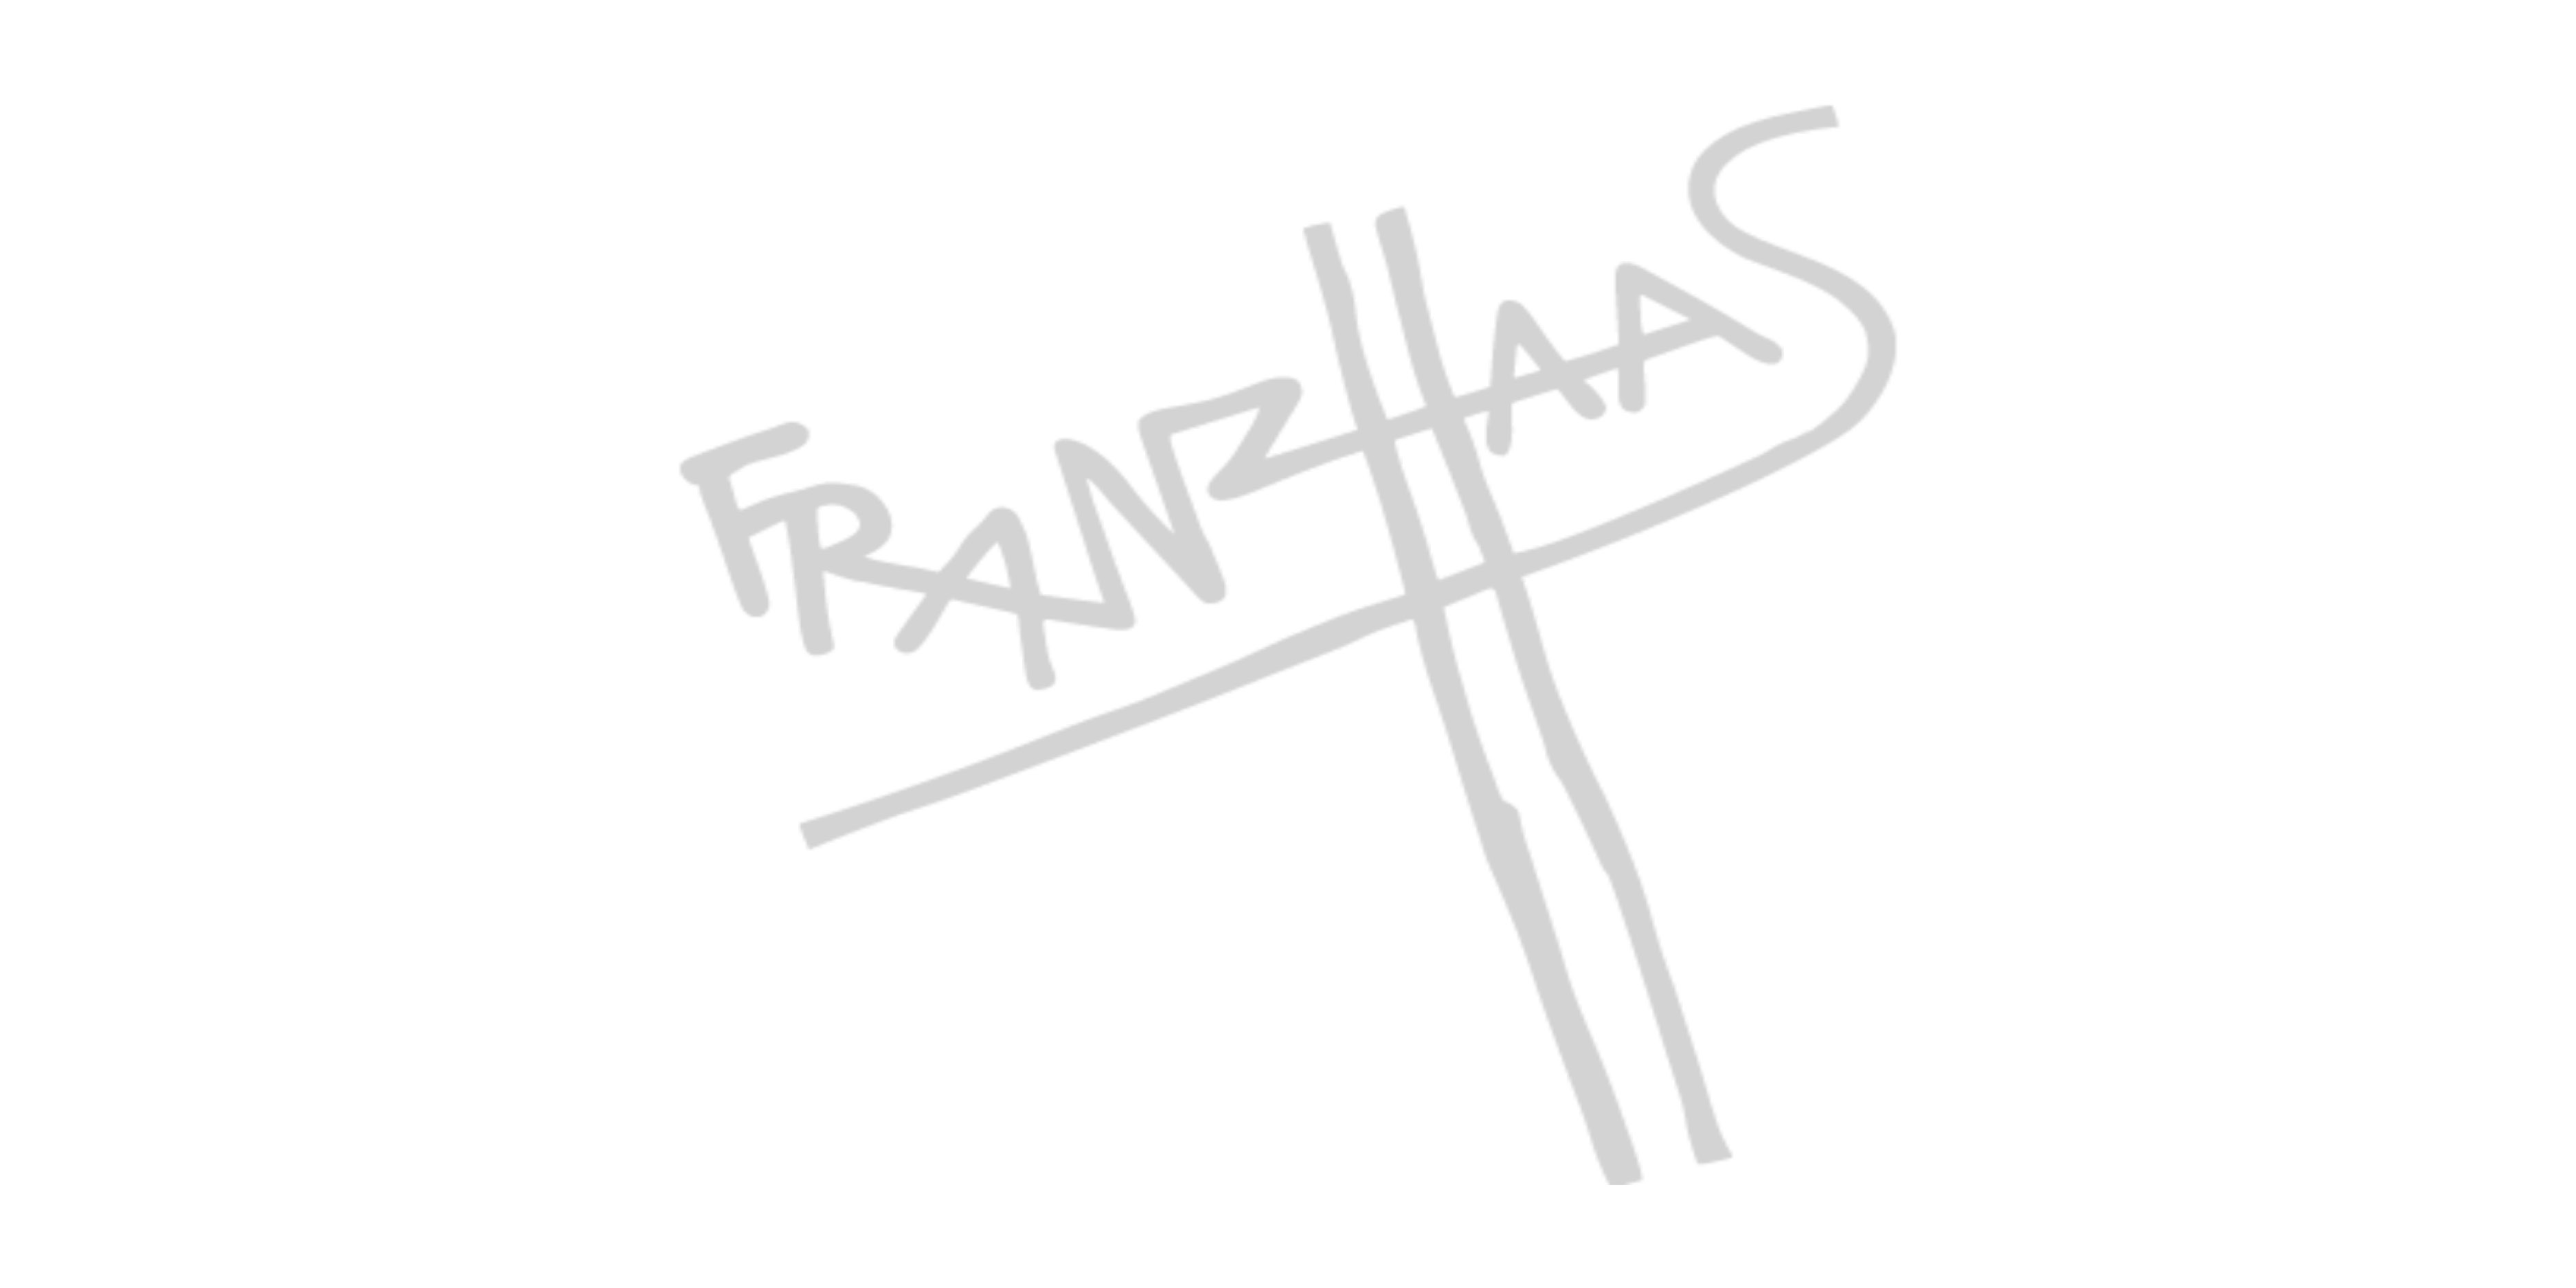 Franz Haas GmbH